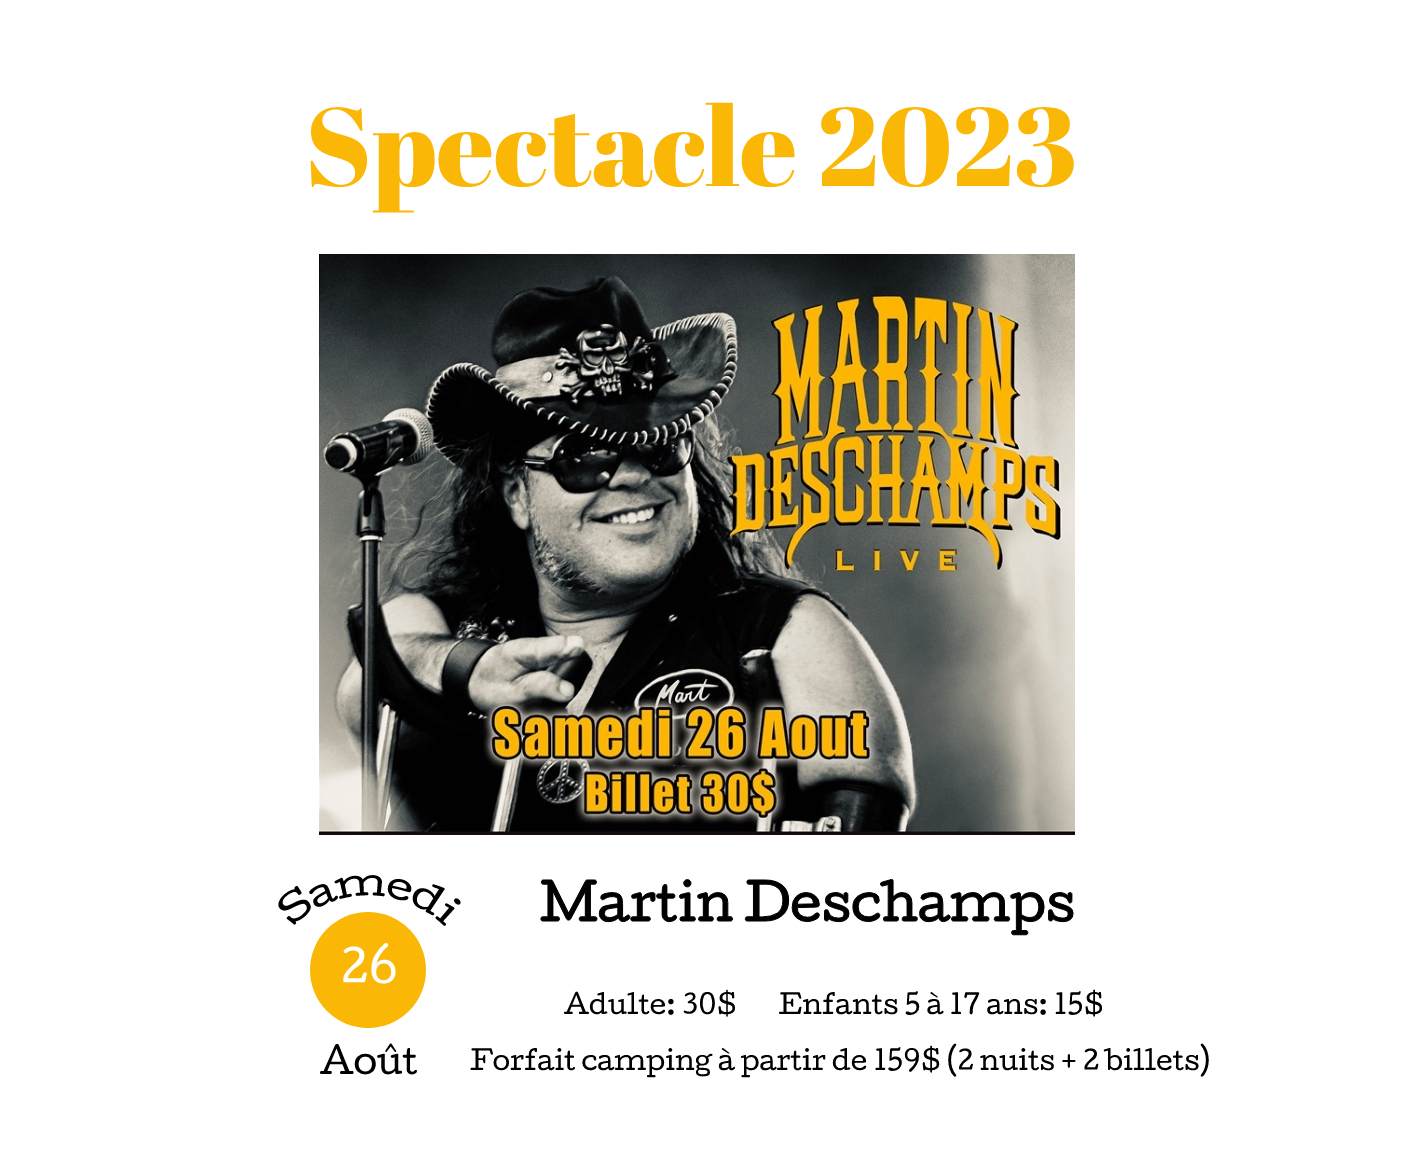 Martin Deschamps